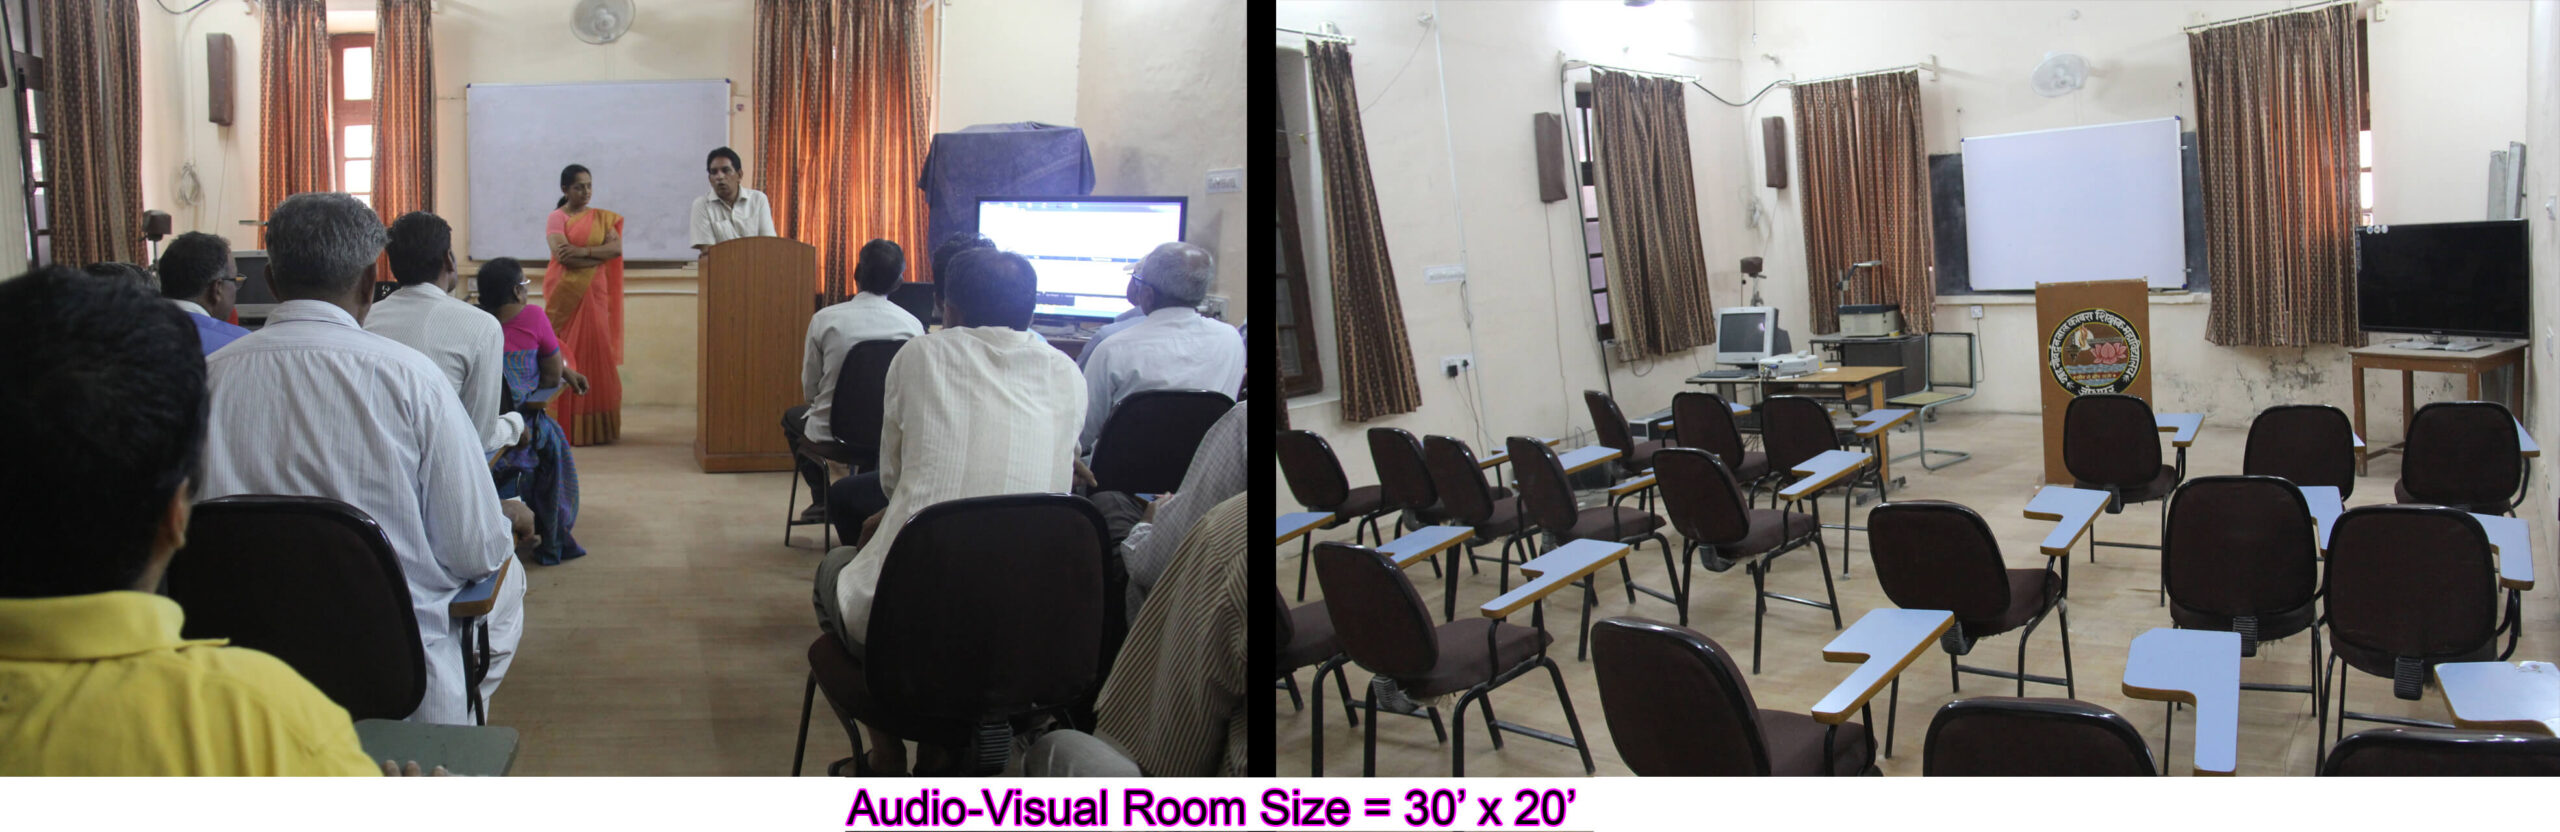 Audio-Visual Room